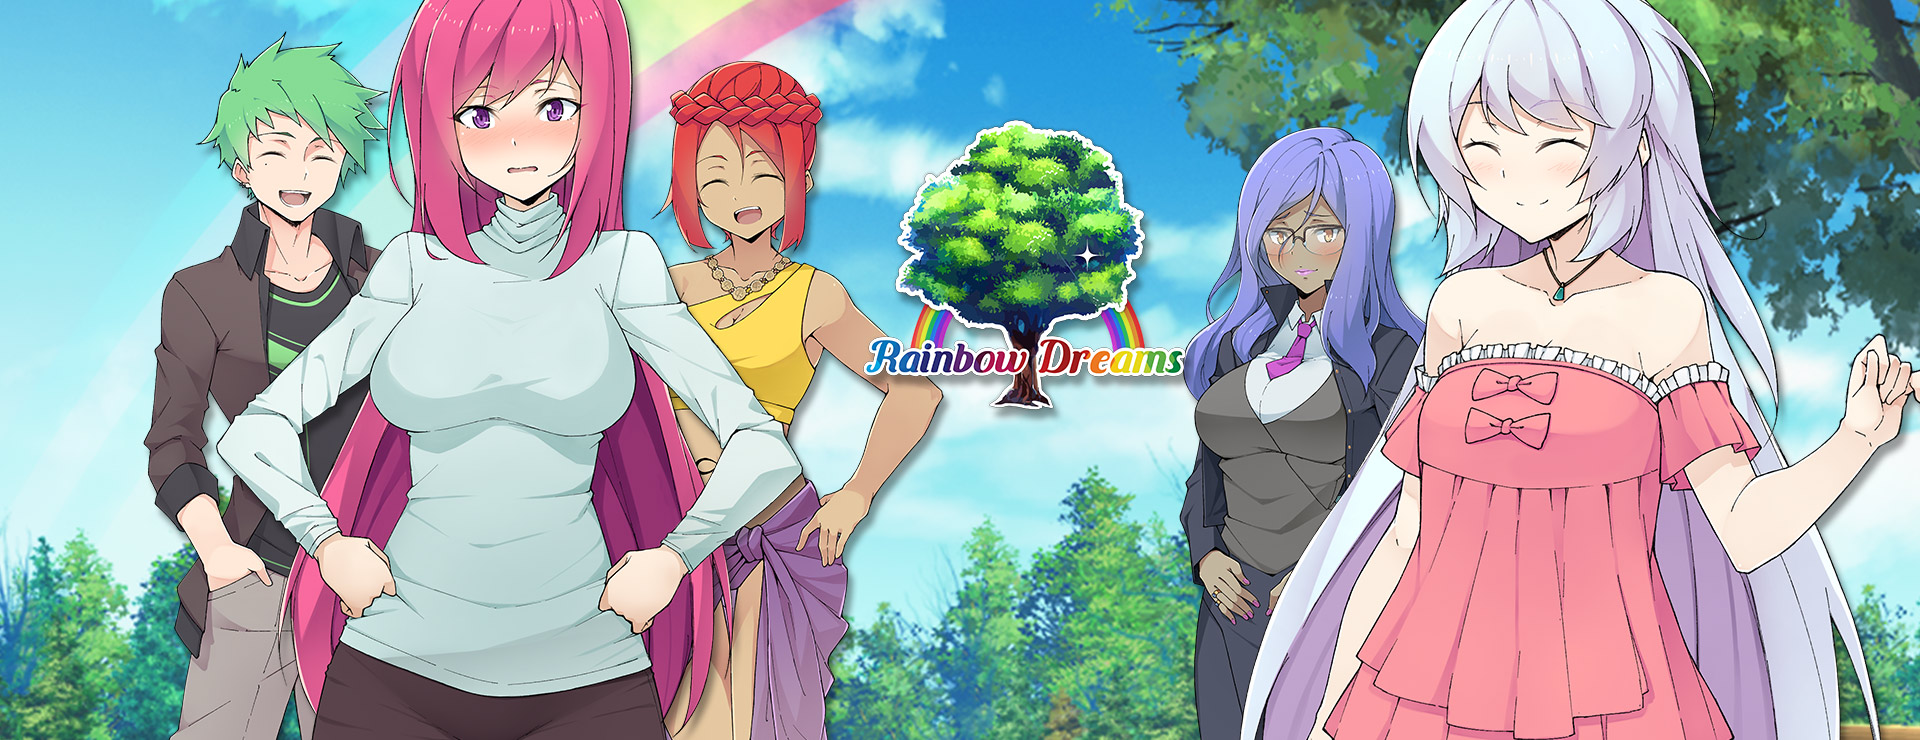 Rainbow Dreams - Deluxe Edition - ビジュアルノベル ゲーム